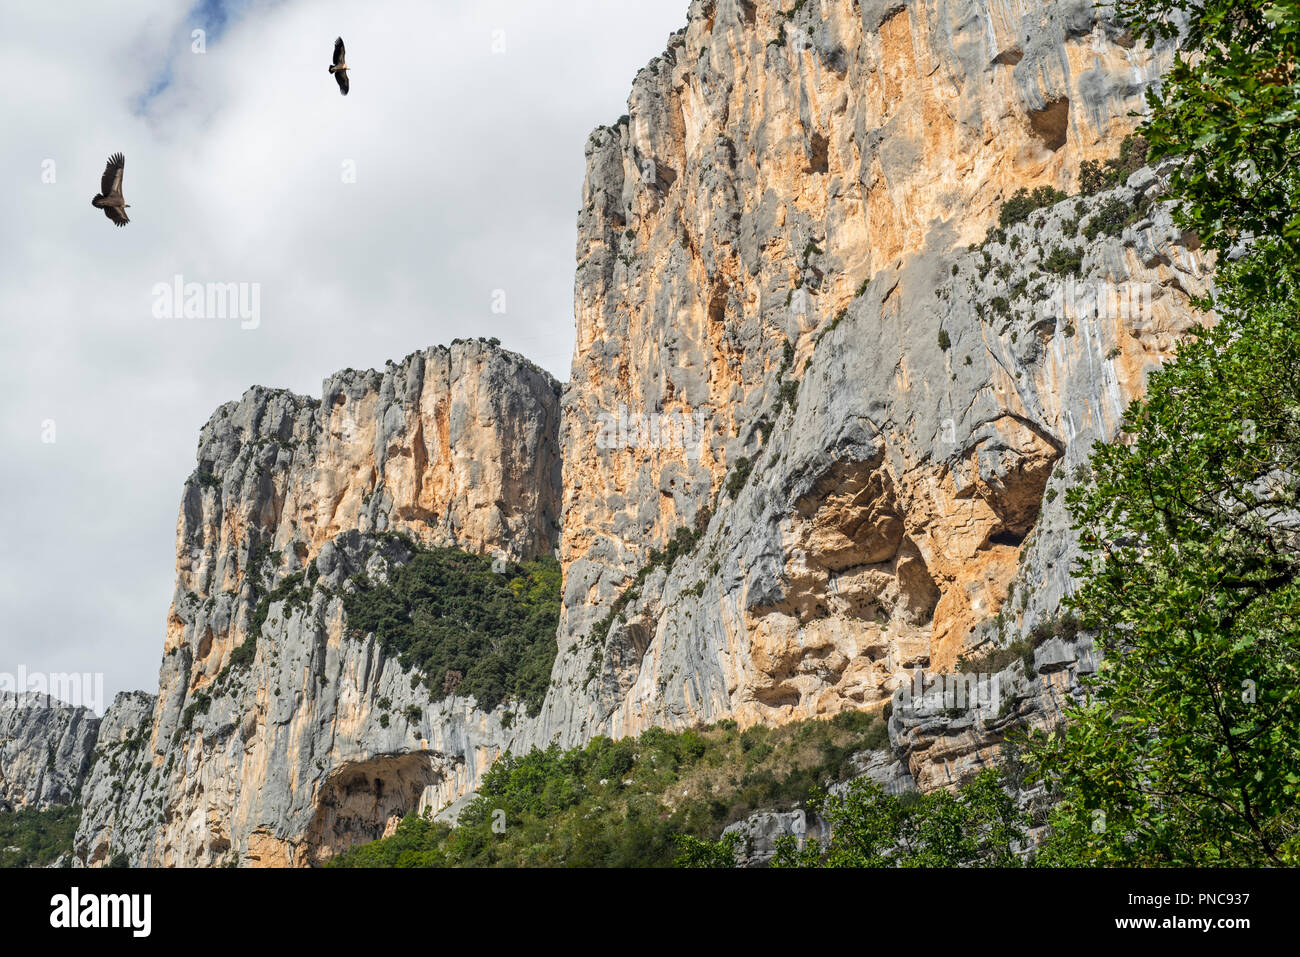 Two griffon vultures (Gyps fulvus) flying through the Gorges du Verdon / Verdon Gorge canyon, Alpes-de-Haute-Provence, Provence-Alpes-Côte d'Azur, Fra Stock Photo